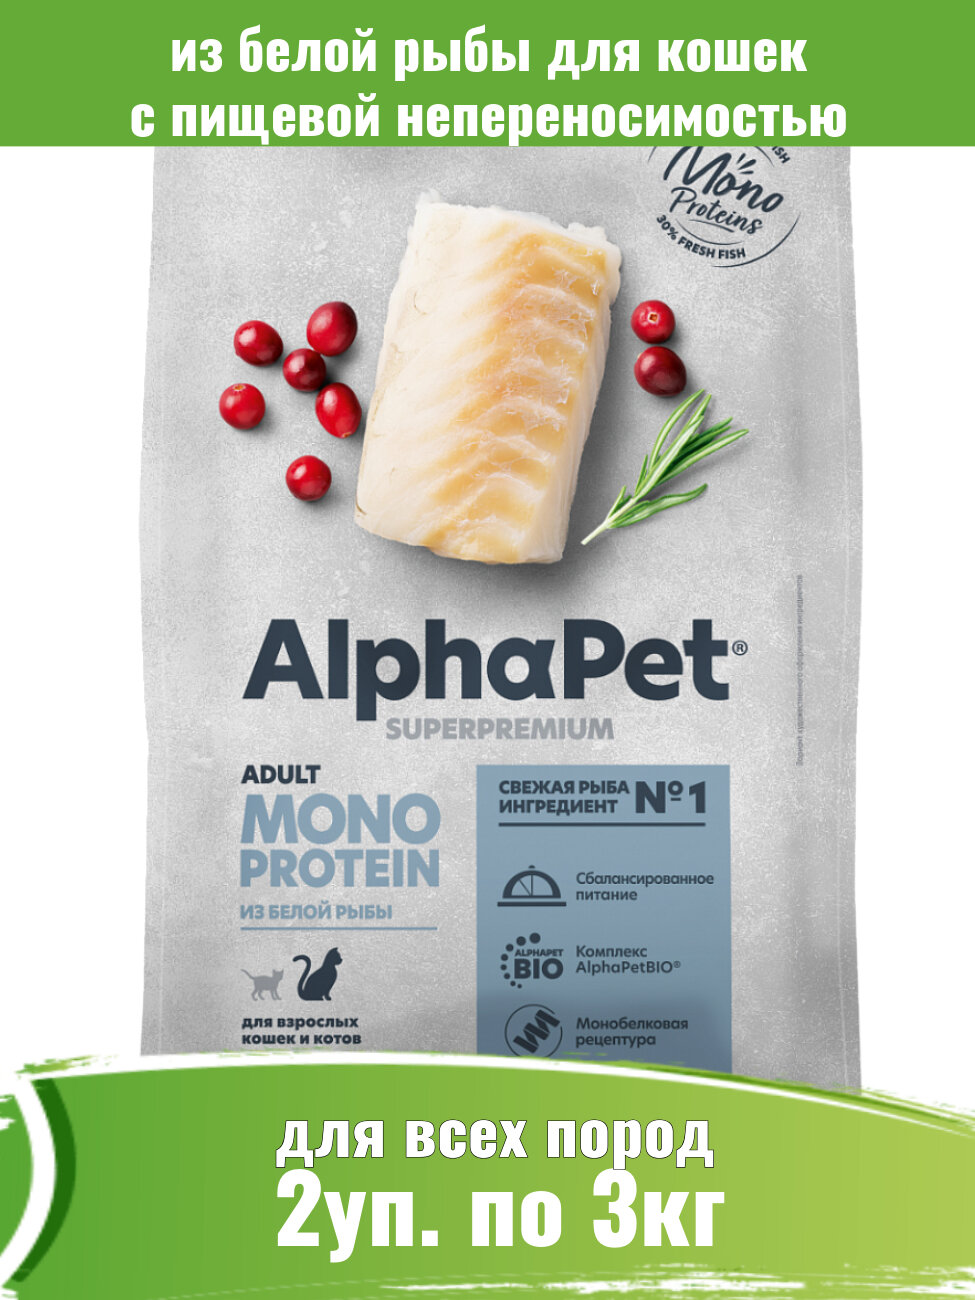 AlphaPet Monoprotein 2шт по 3кг корм для кошек из белой рыбы